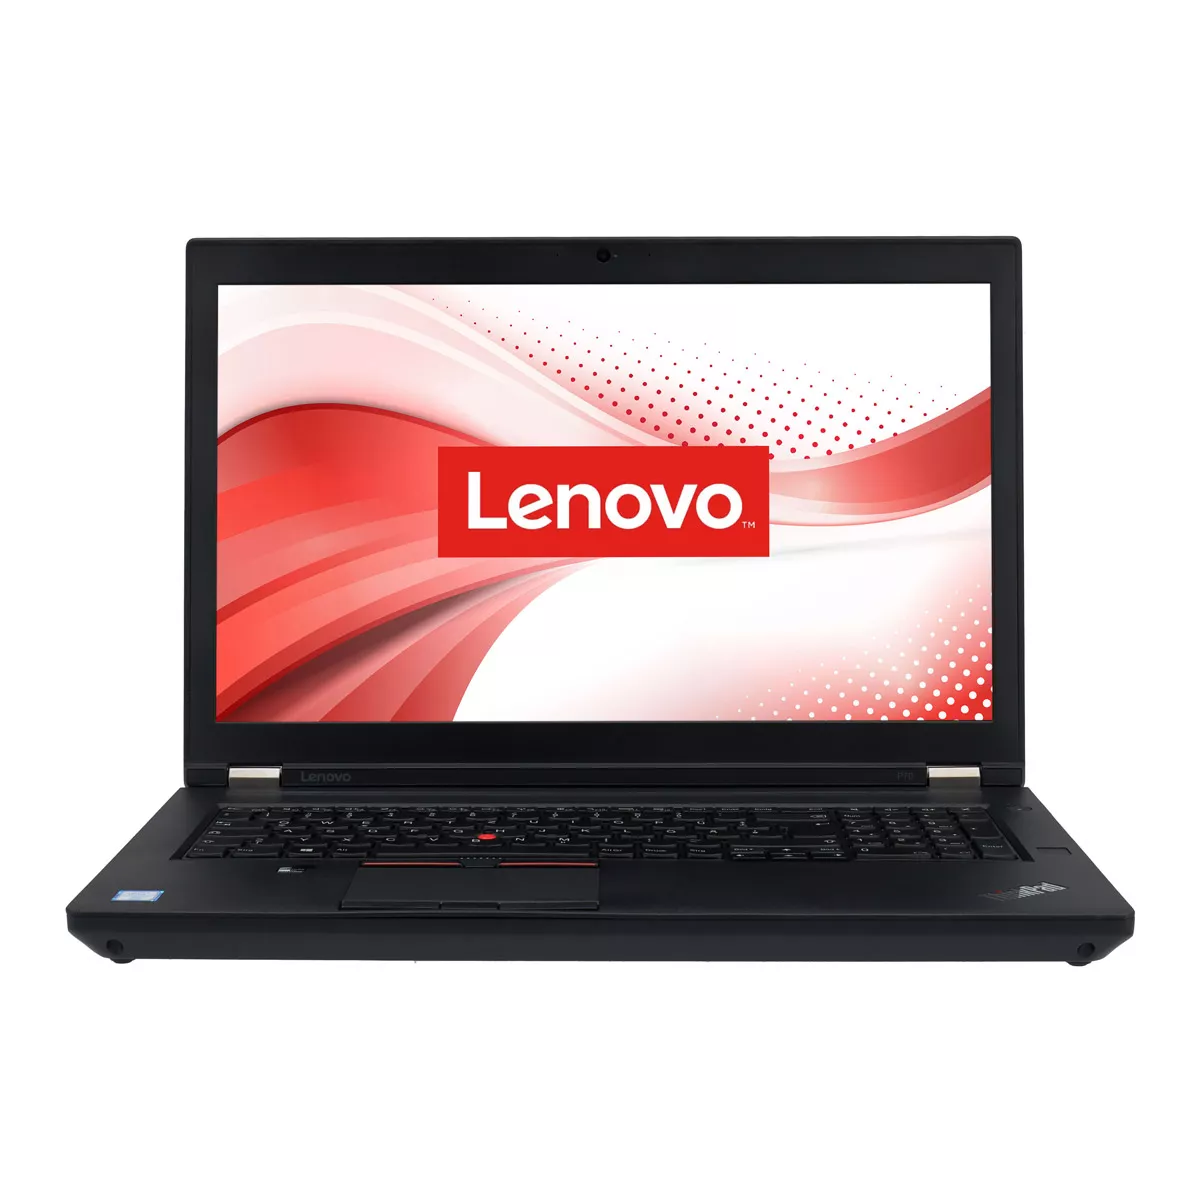 Lenovo ThinkPad P70 Core i7 6700HQ nVidia Quadro M600M 16 GB 500 GB M.2 SSD Webcam B